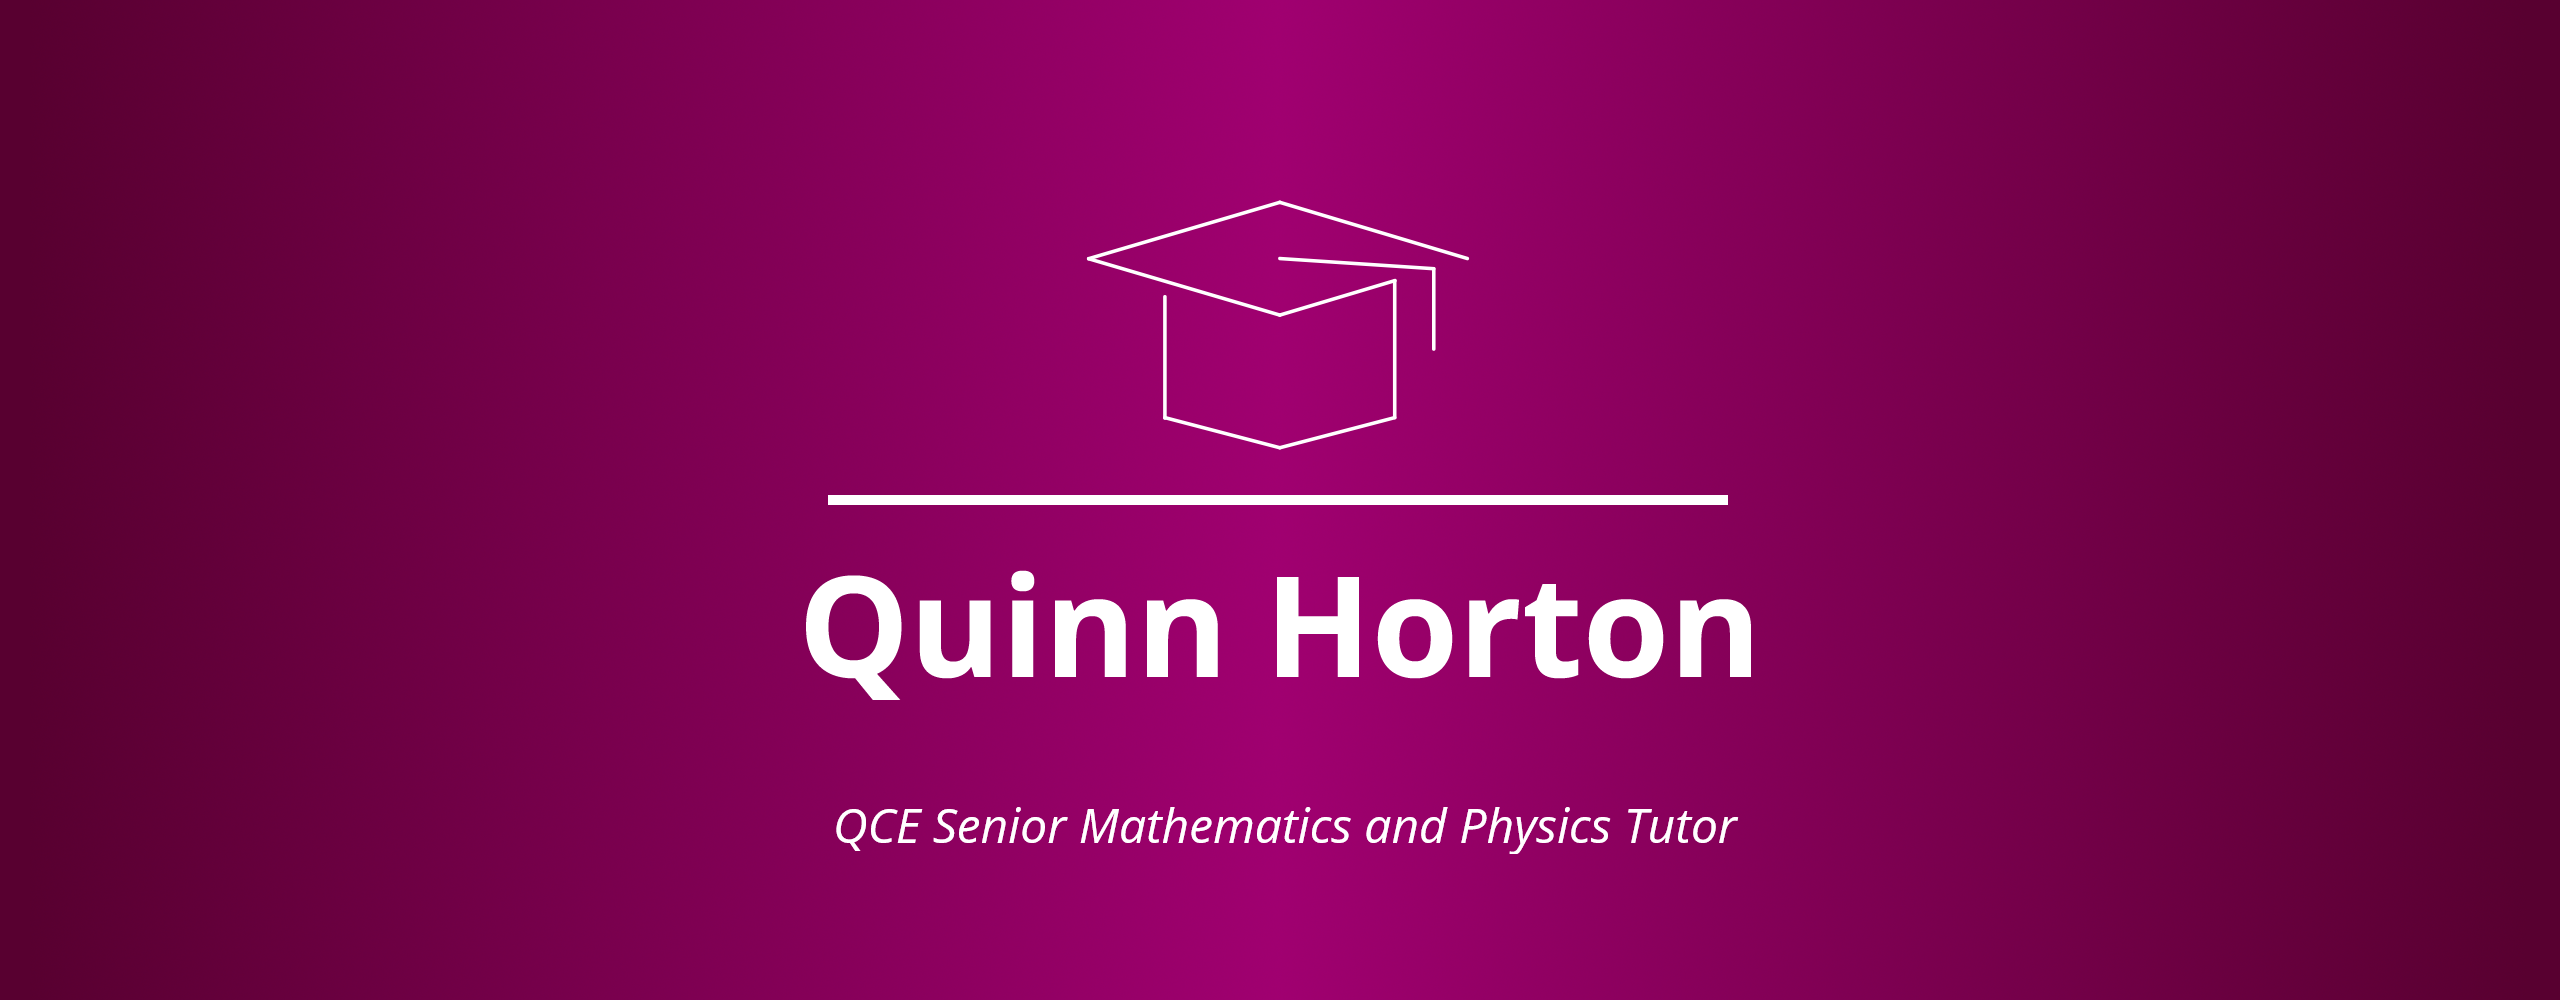 Website splash banner mortarboard logo with name Quinn Horton